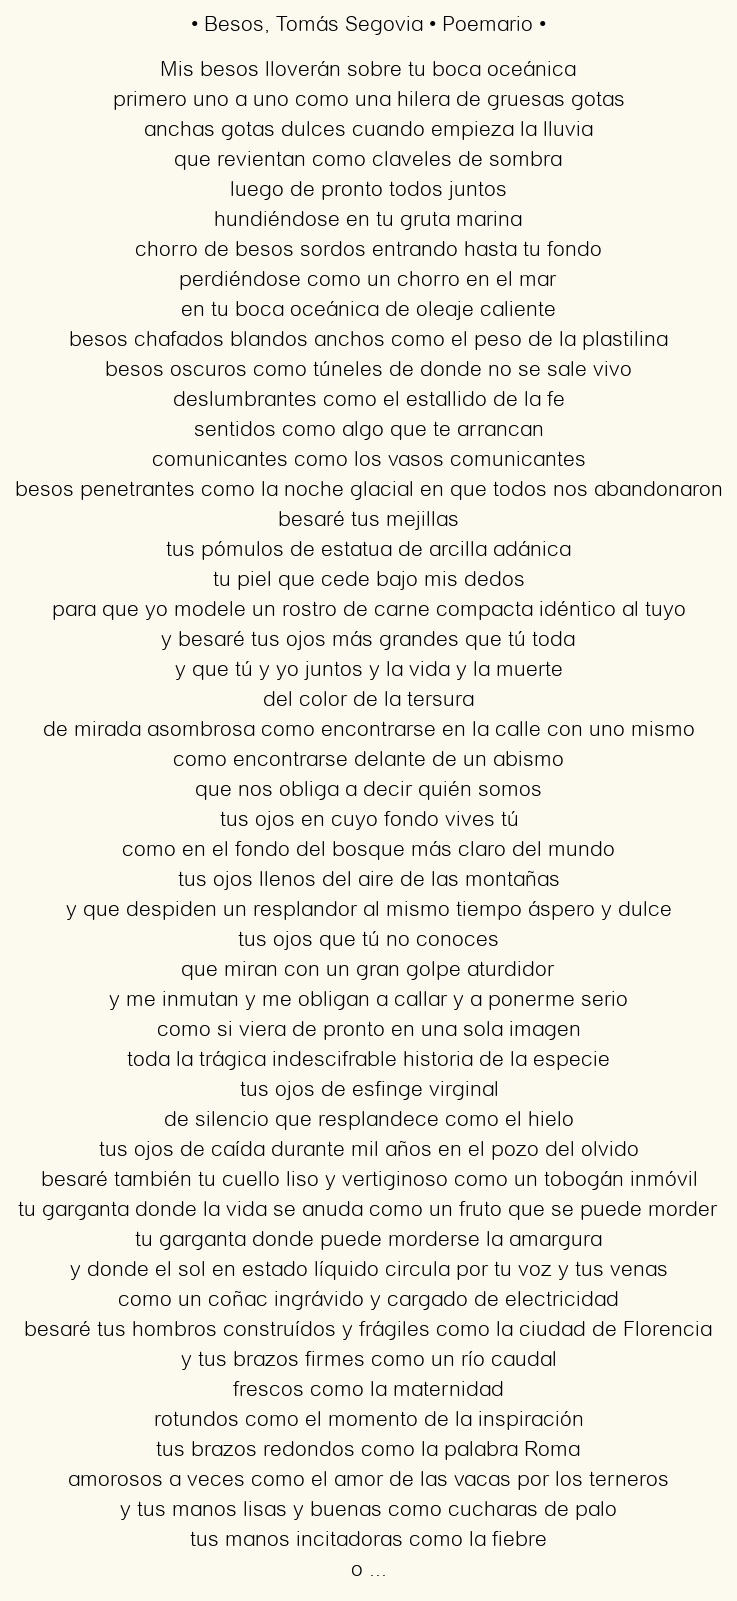 Imagen con el poema Besos, por Tomás Segovia